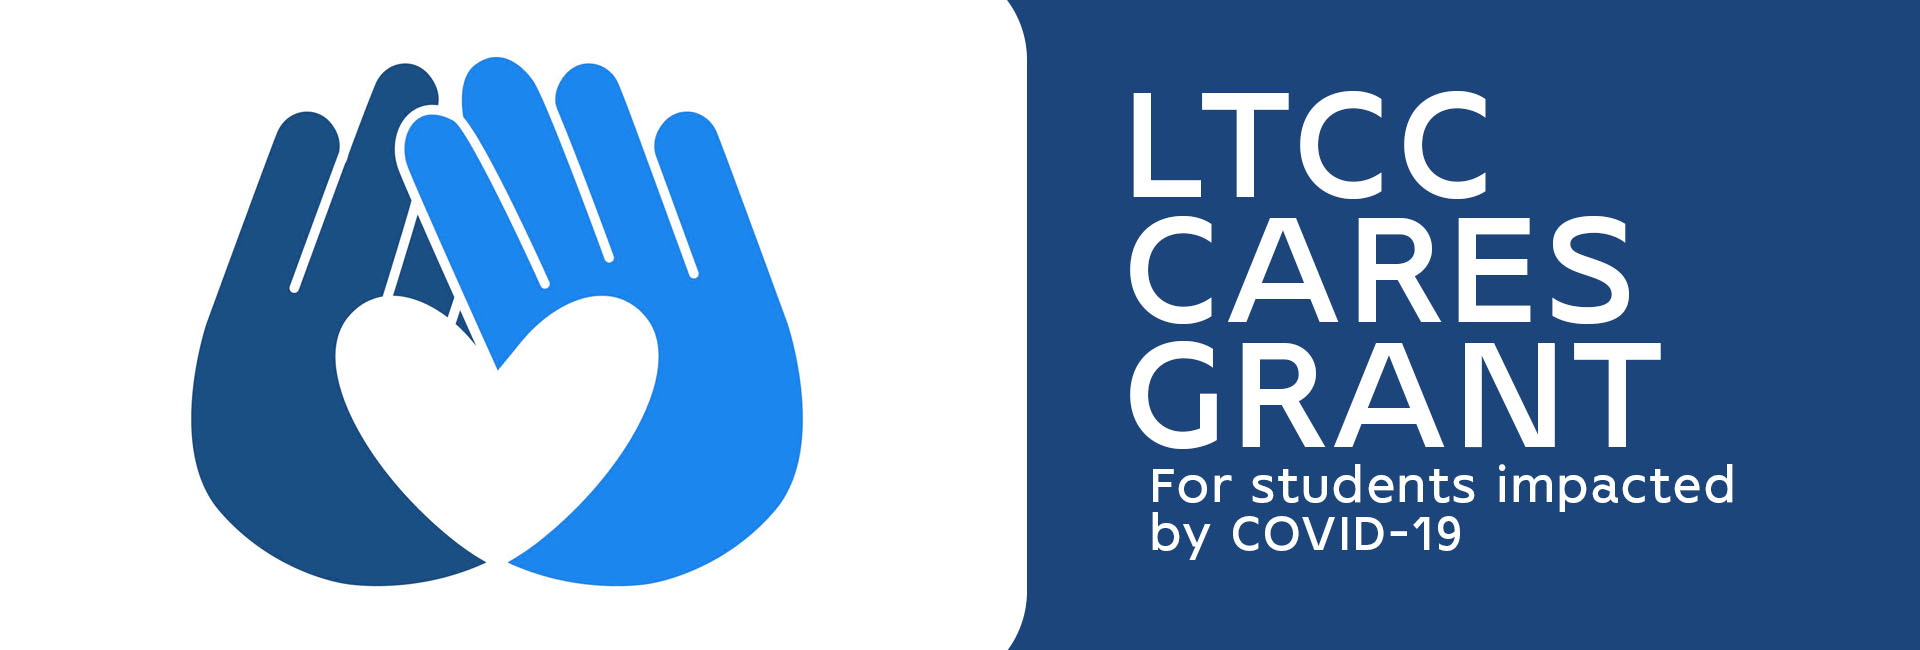 LTCC CARES Grant